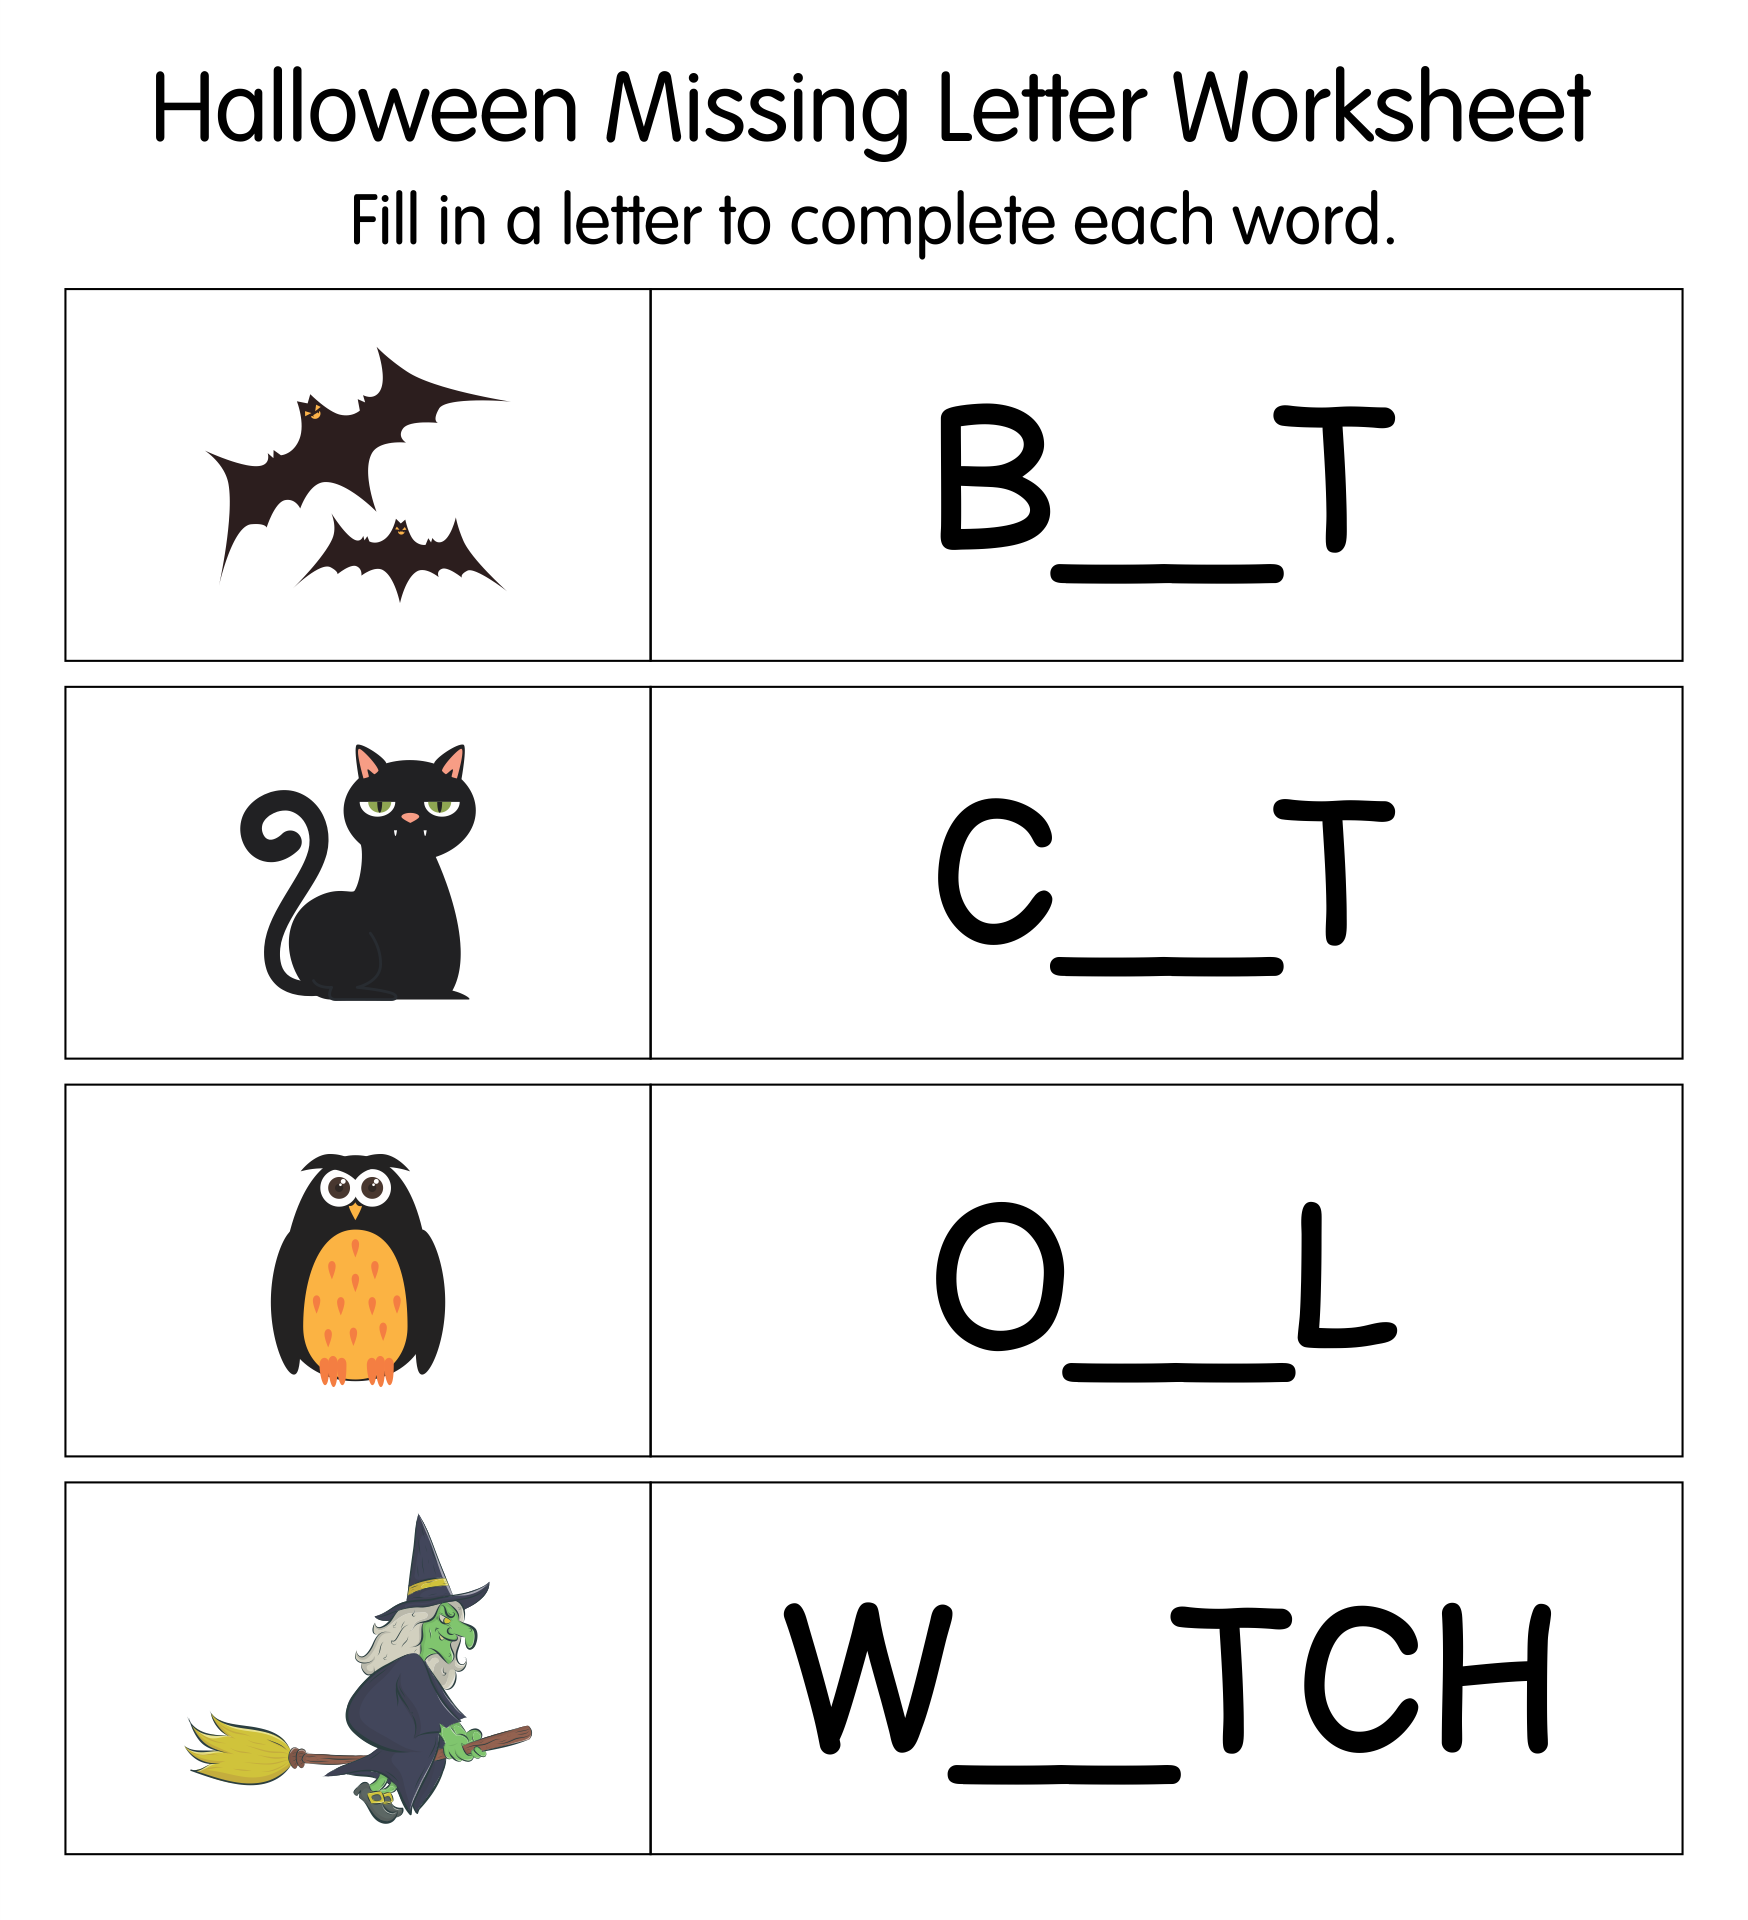 Kindergarten Halloween Worksheets Printables